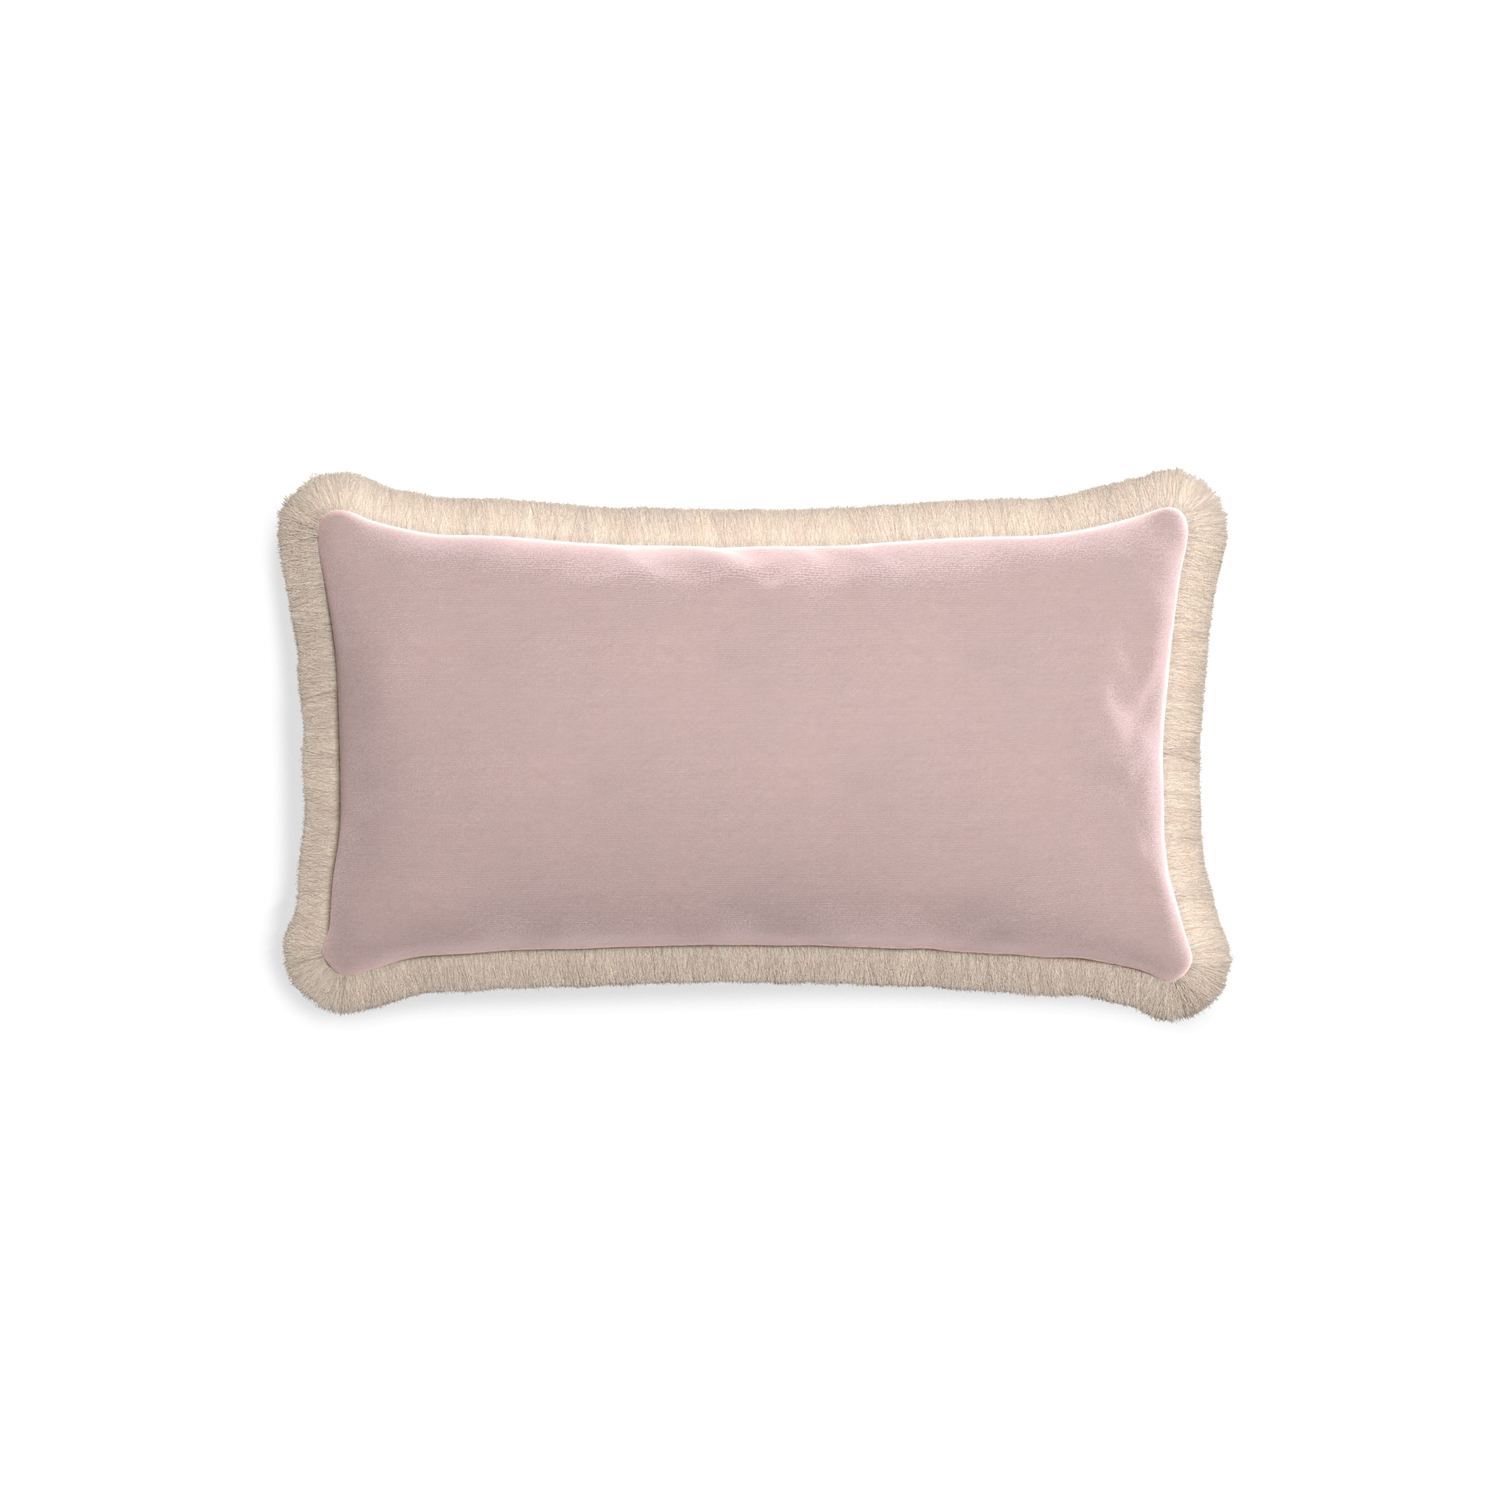 rectangle light pink velvet pillow with cream fringe